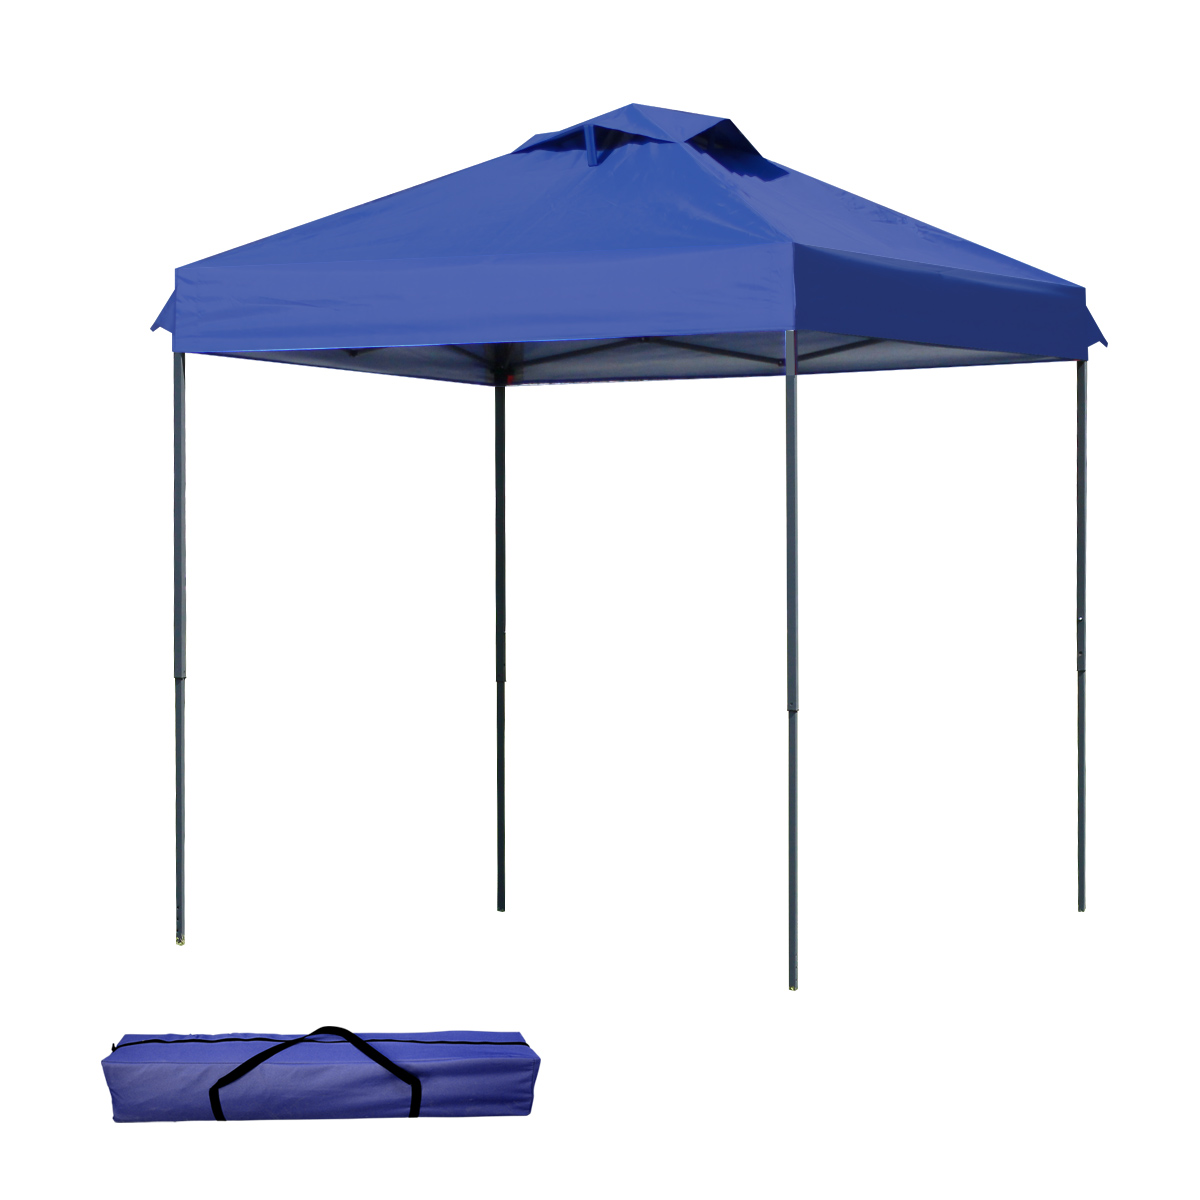 タープテント 2m×2m ワンタッチ サンシェード スチール 日よけ ベンチレーション付き 通気性抜群 紫外線防止 UVカット 撥水加工 MERMONT